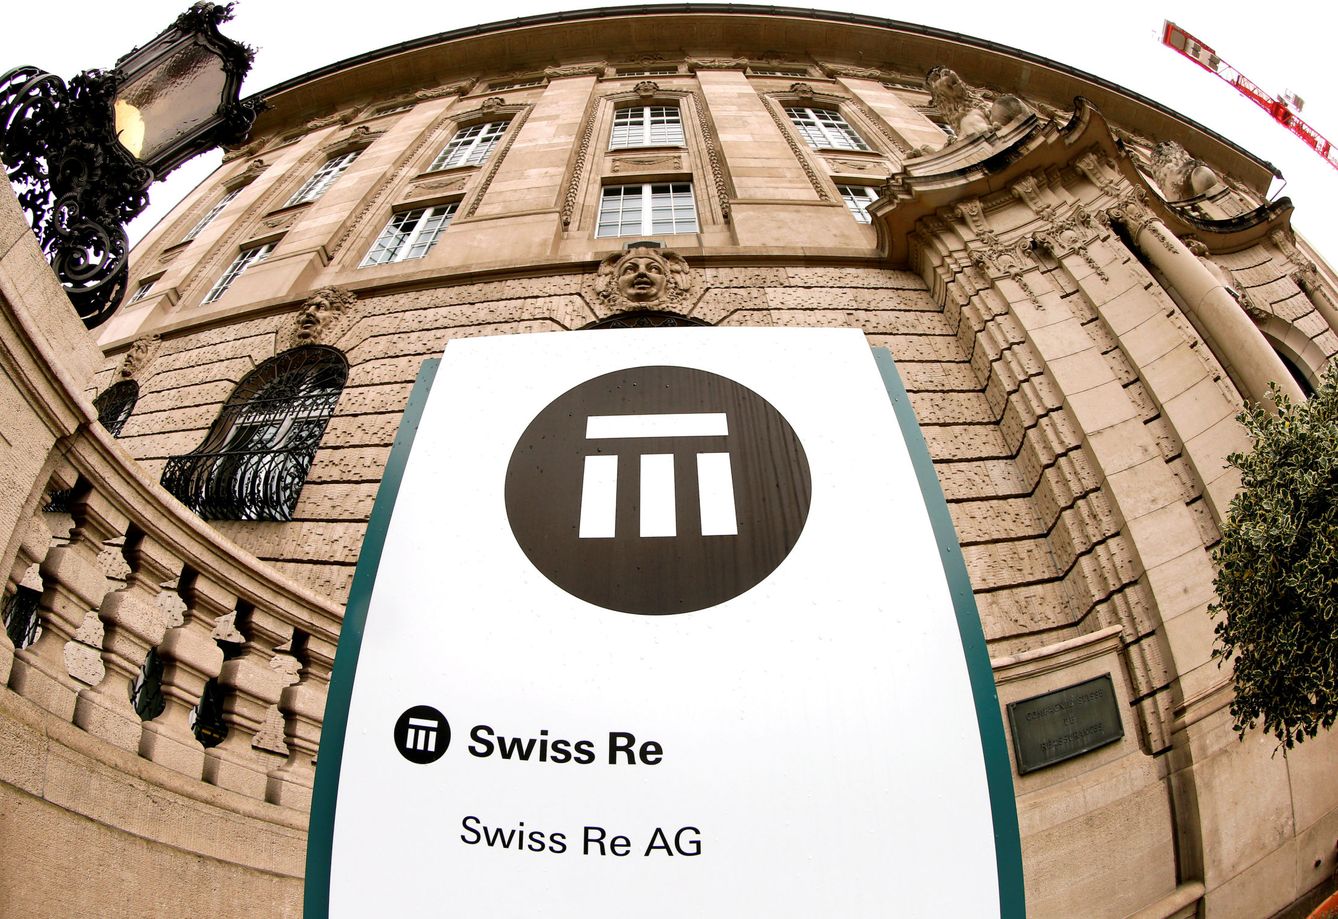 Sede central de Swiss Re en Suiza (REUTERS)